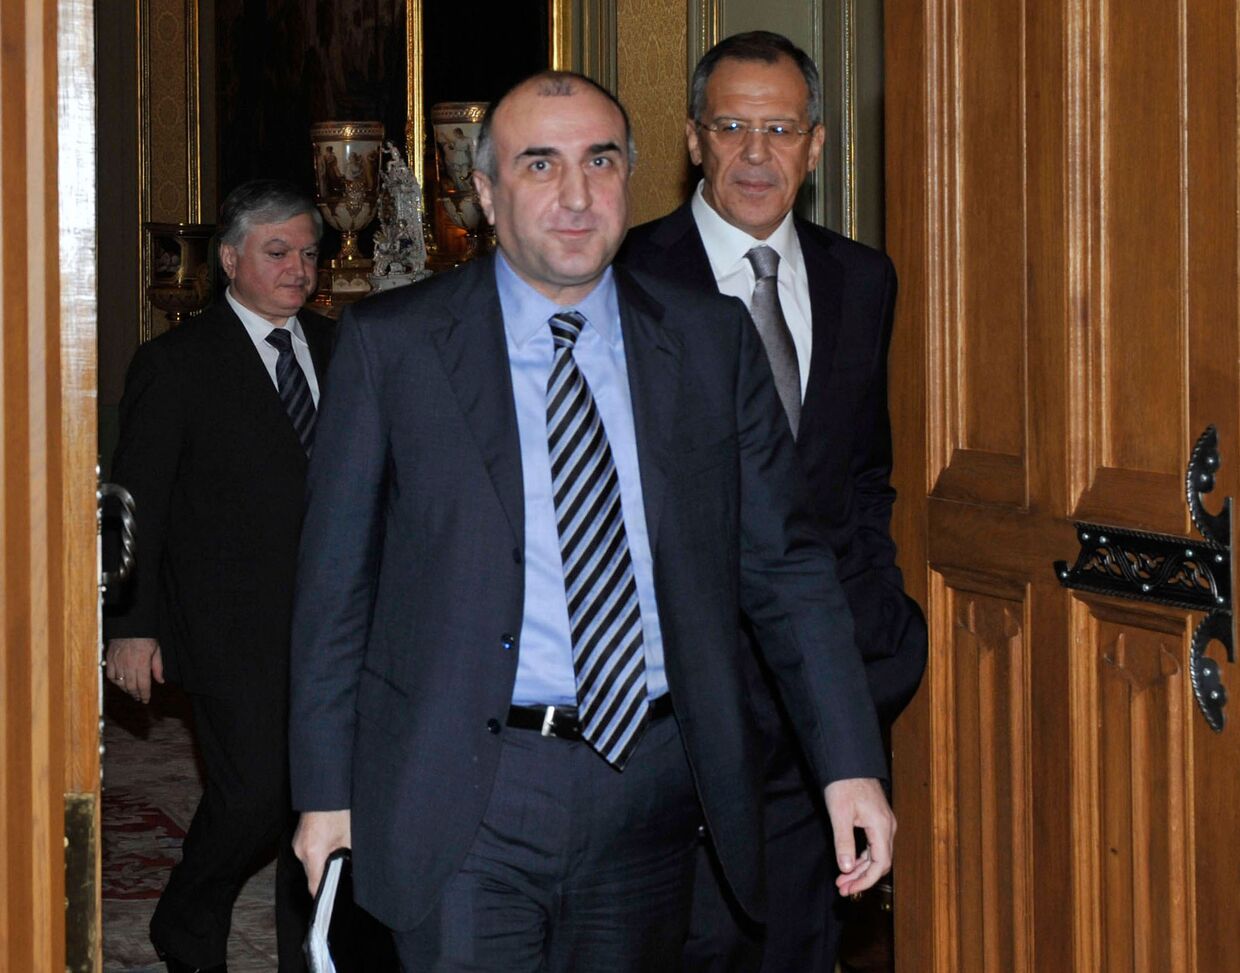 Министр иностранных дел Азербайджана Эльмар Мамедъяров. Архив